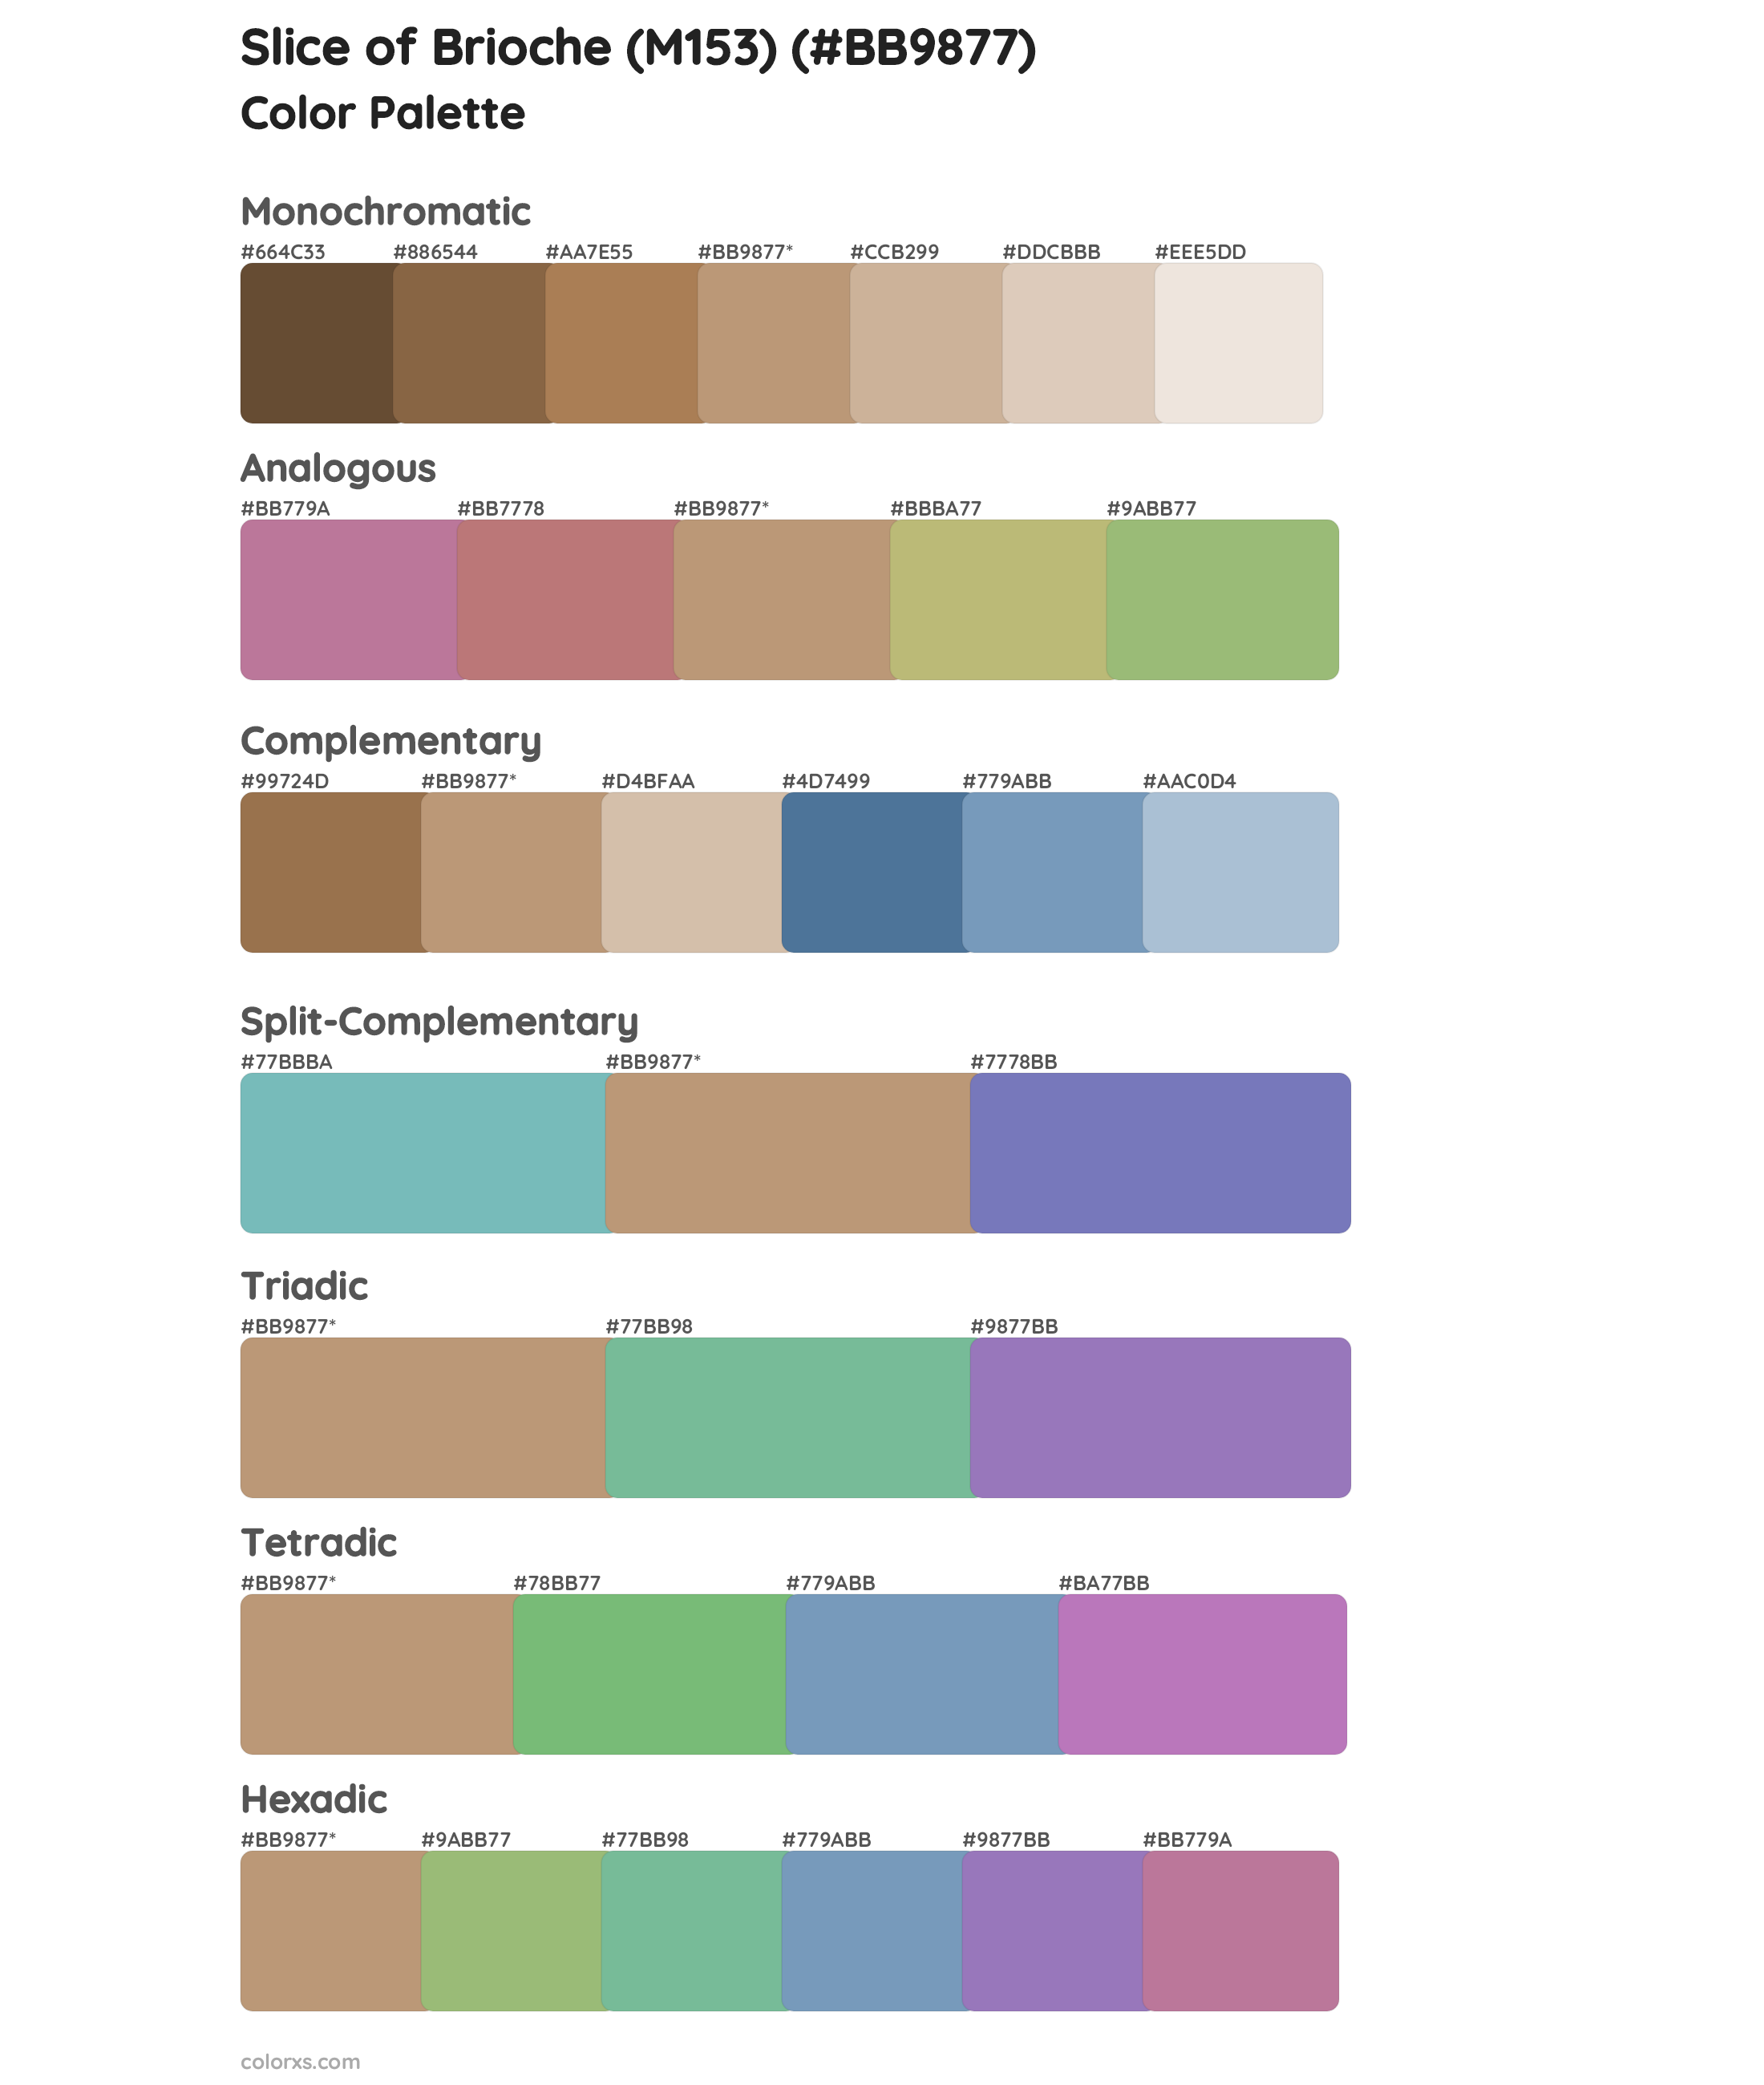 Slice of Brioche (M153) Color Scheme Palettes